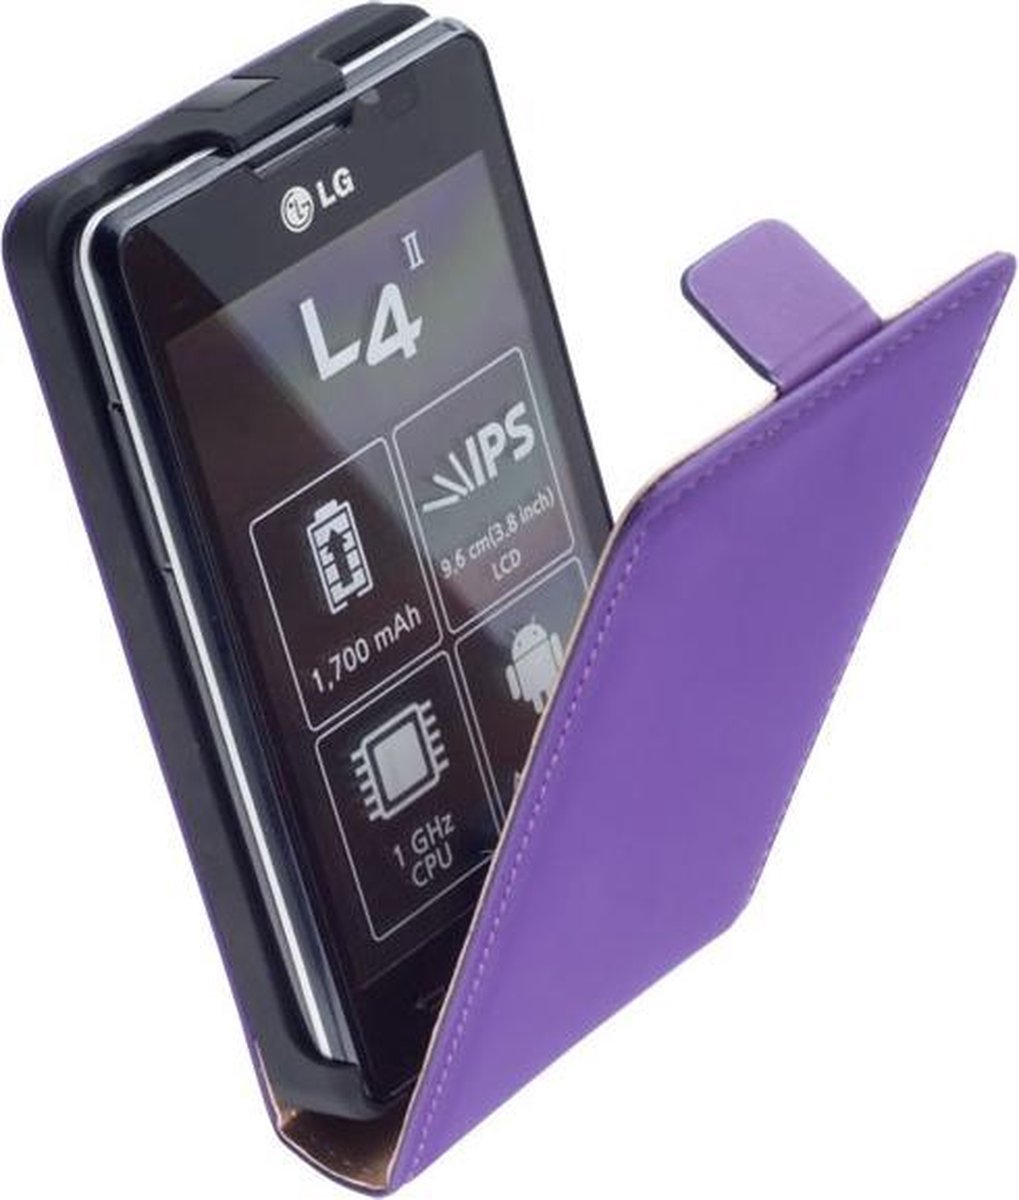 Lederen Flip Case Cover Hoesje - LG Optimus L4 2 E440 Paars